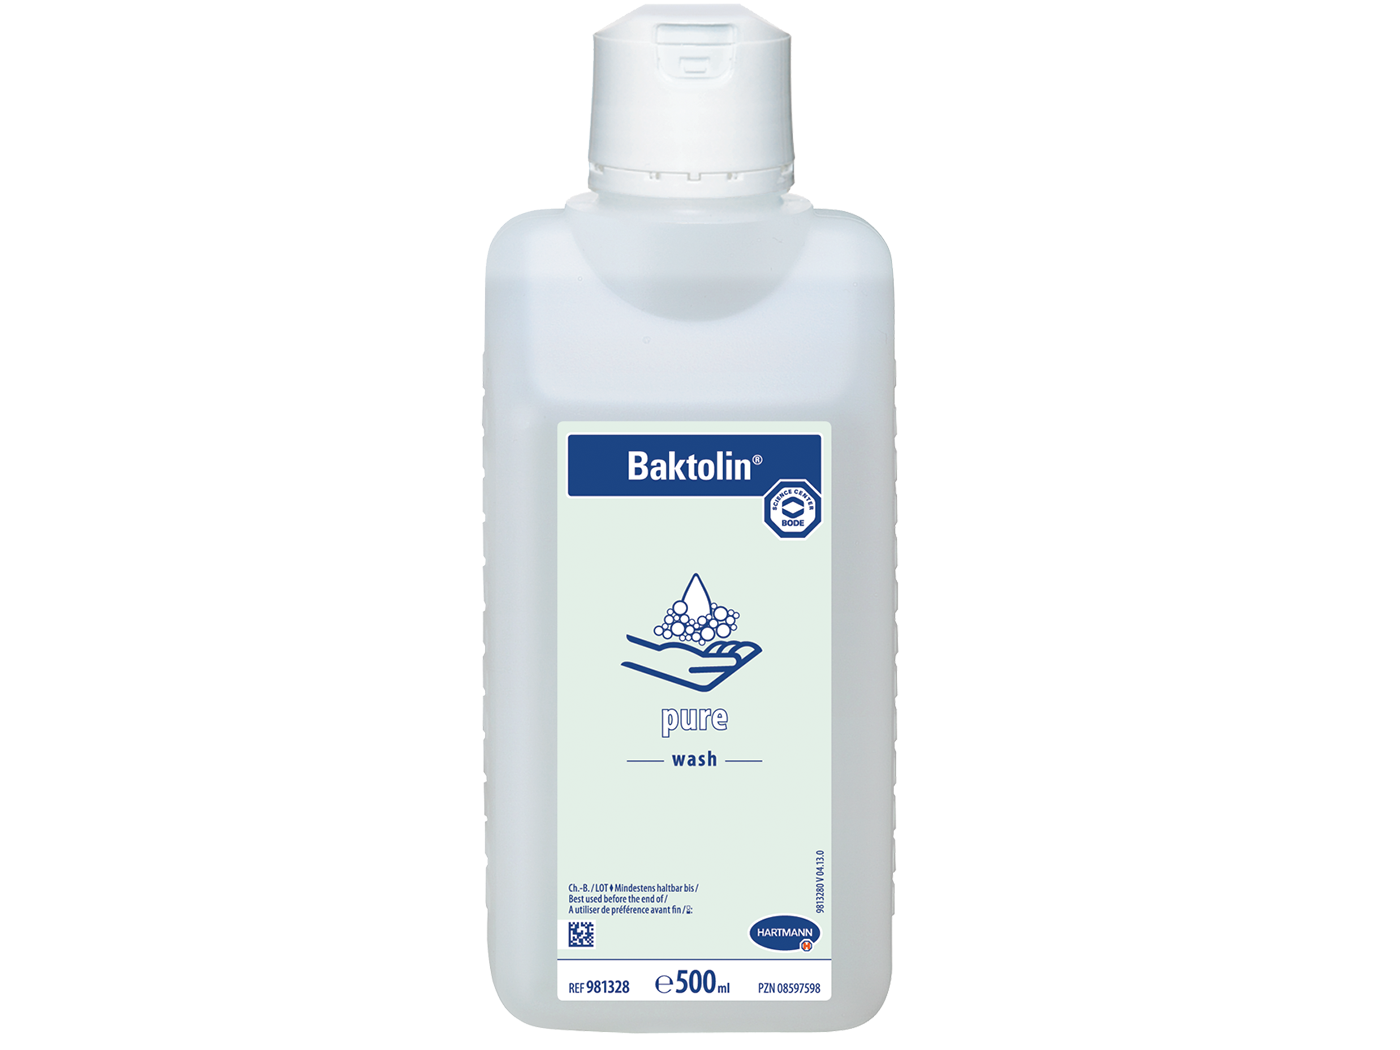 Hartmann Baktolin pure wash lotion